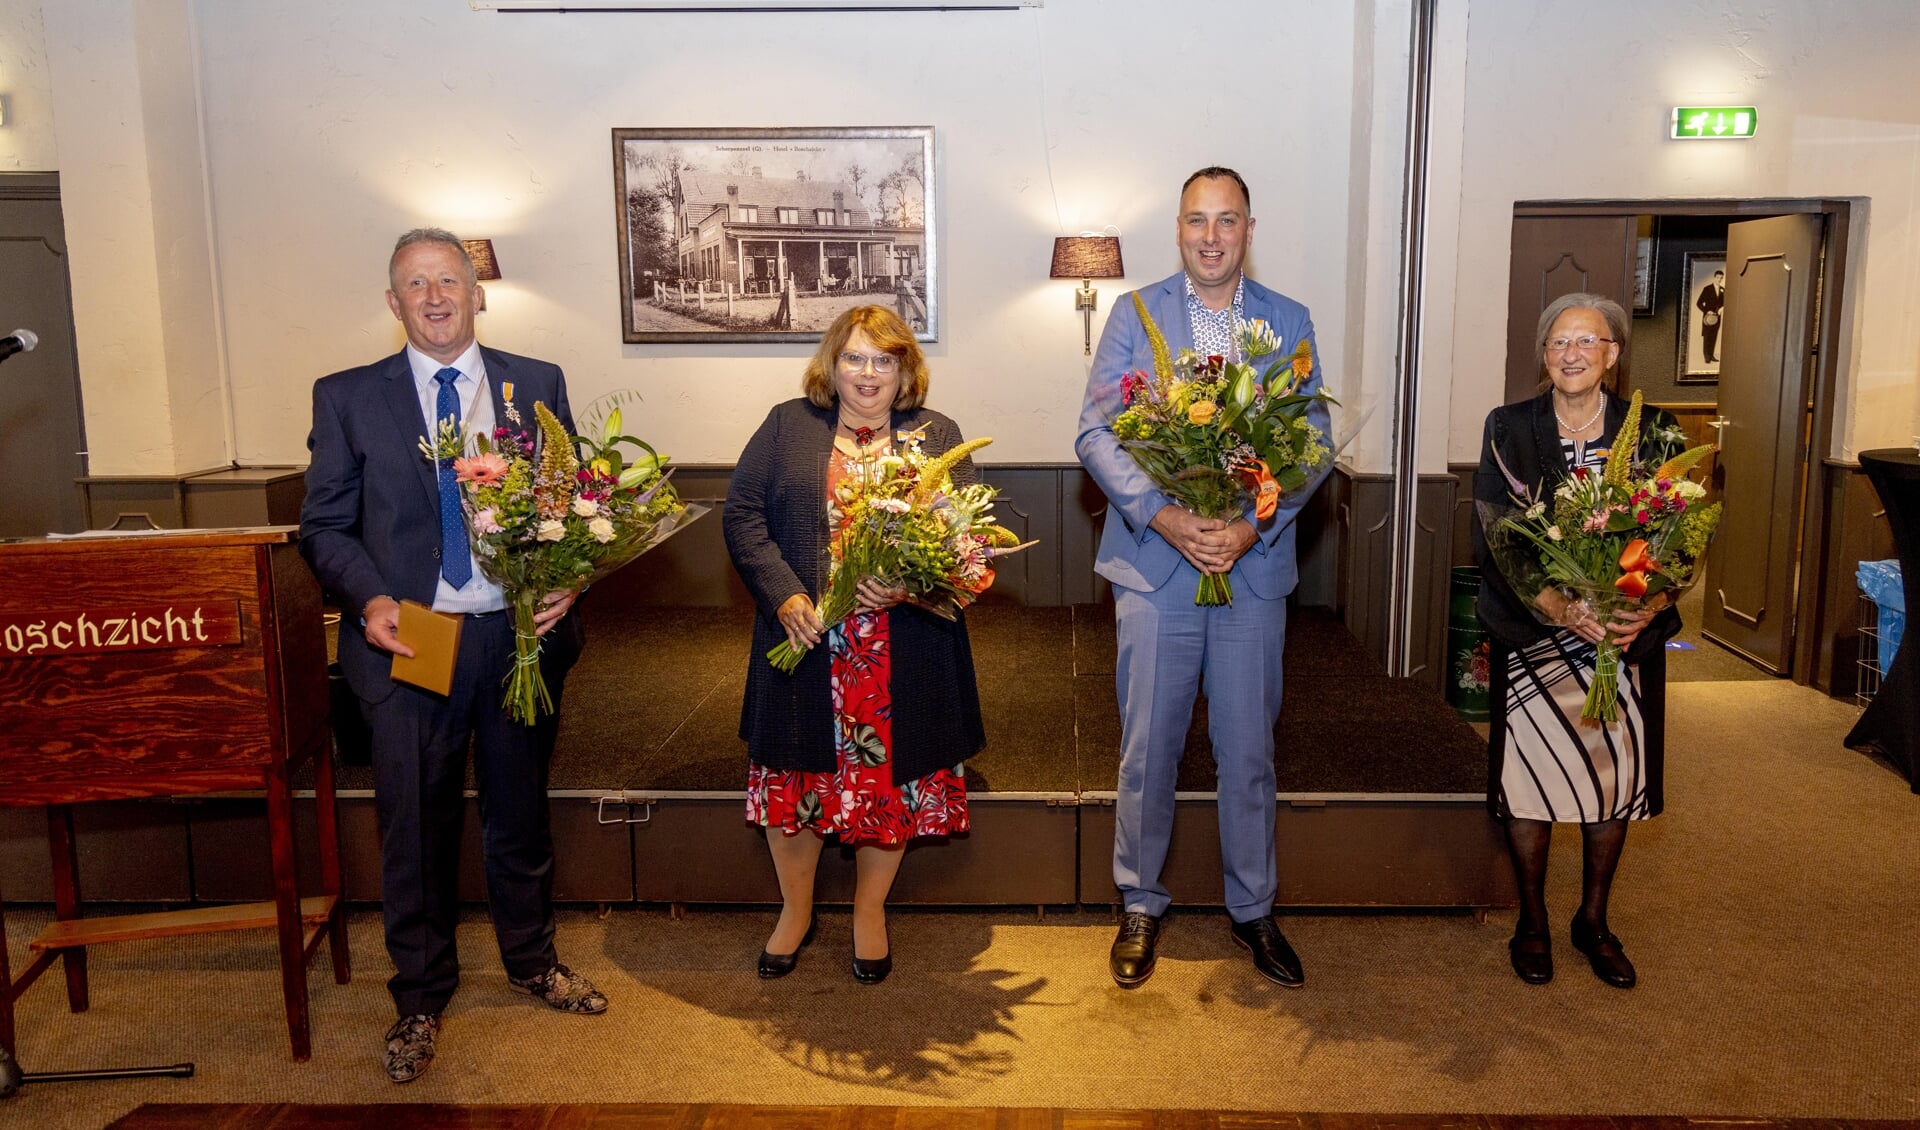 De oficiële foto van de gedecoreerden: Gert Overeem, Petra van Es-van der Wiel, Martin. Brouwer en Lina Linge-Nieuwenhuize.